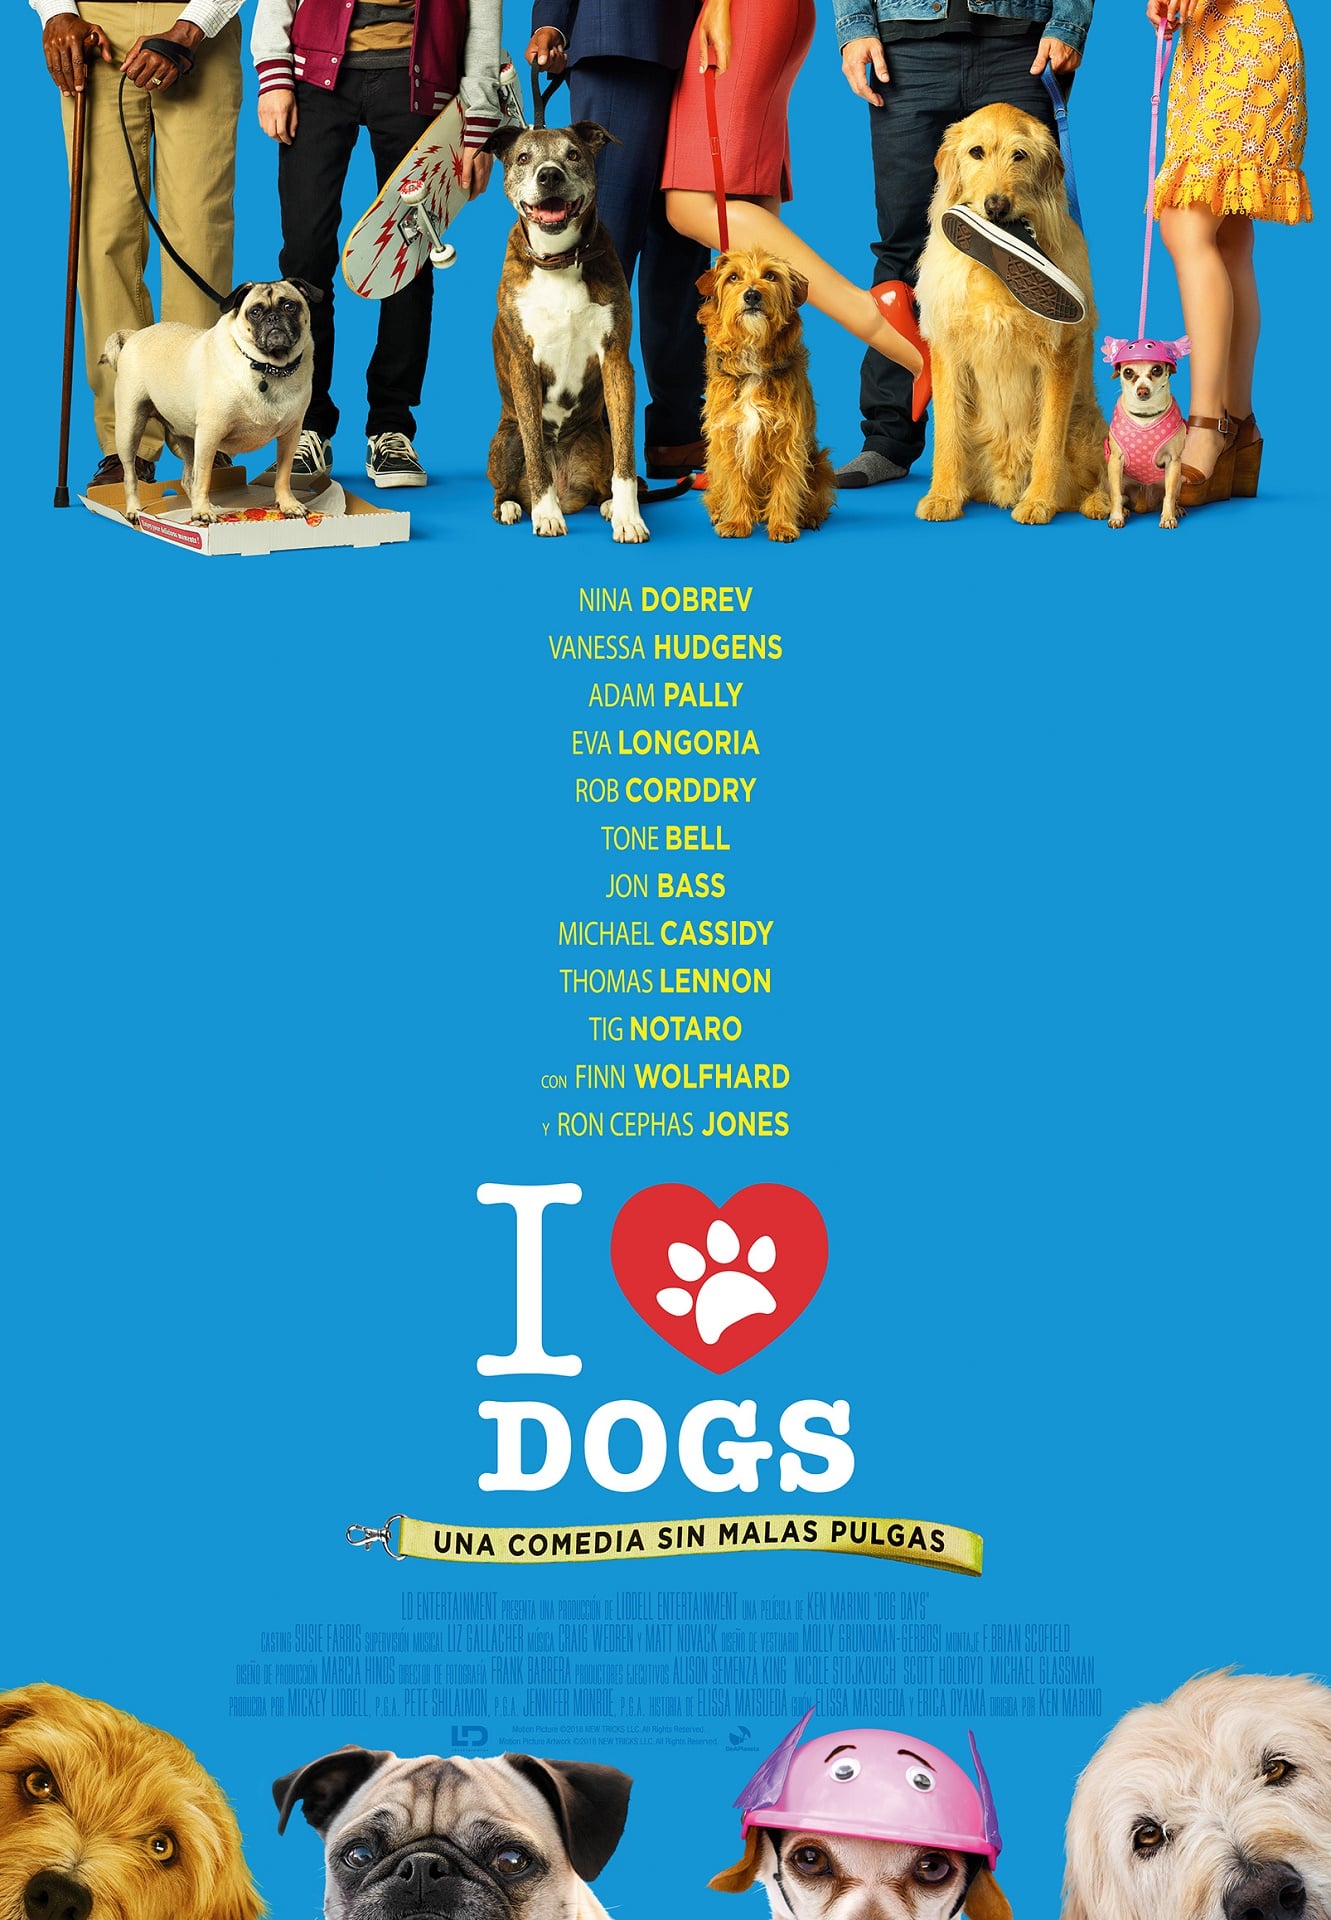 Dog Days (2018) - IMDb